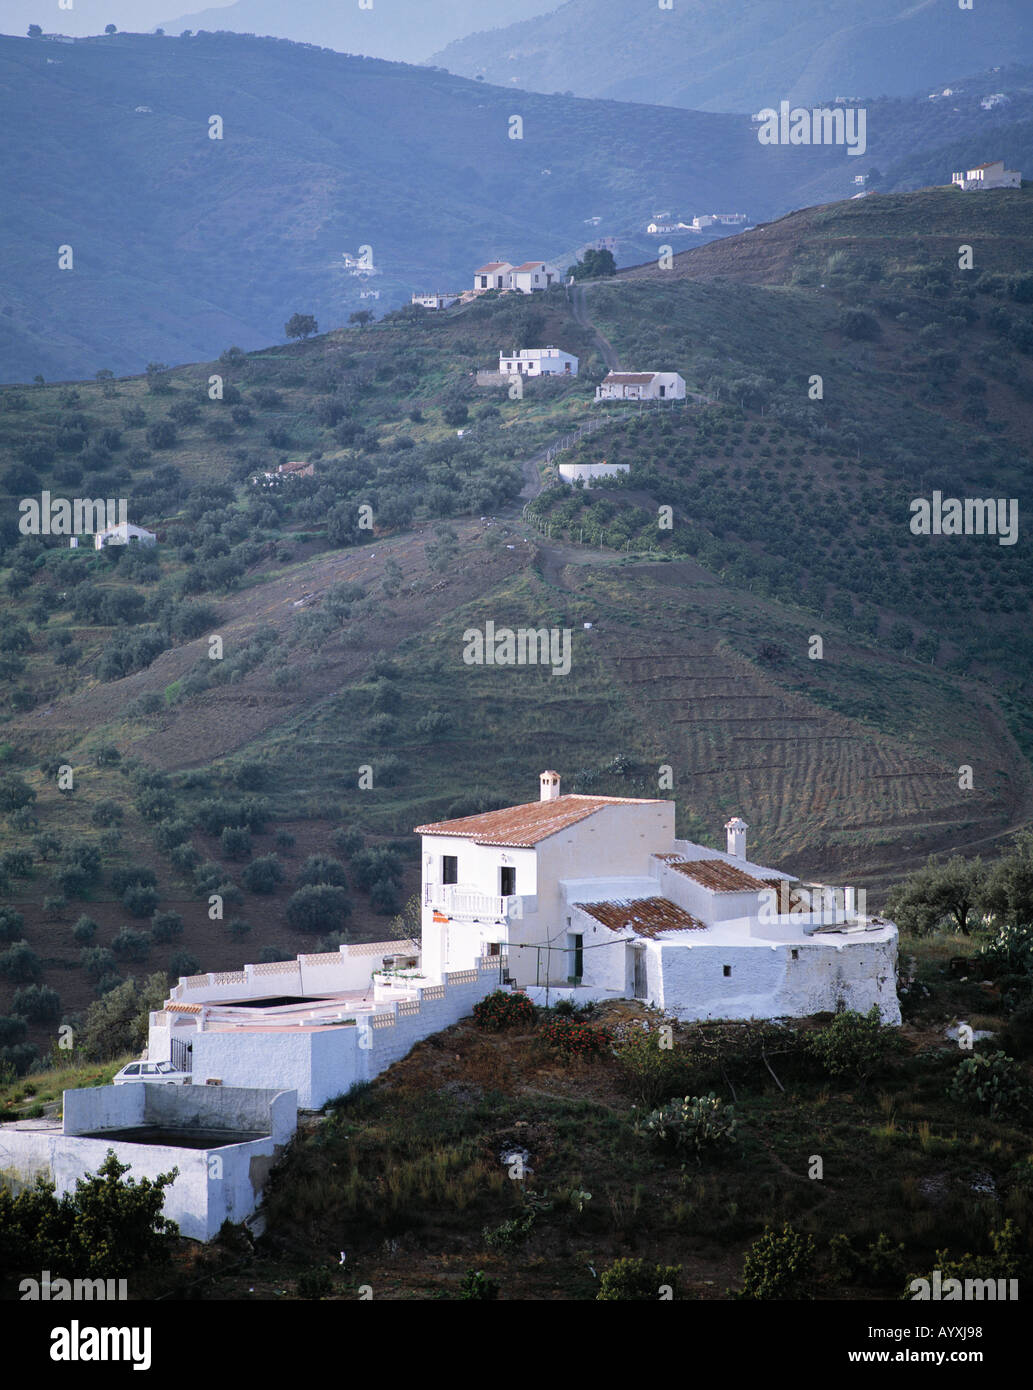 Berglandschaft, Sierra de Almijara, weisses Haus an einem Berghang, Frigiliana, Malaga, Andalusien Stock Photo